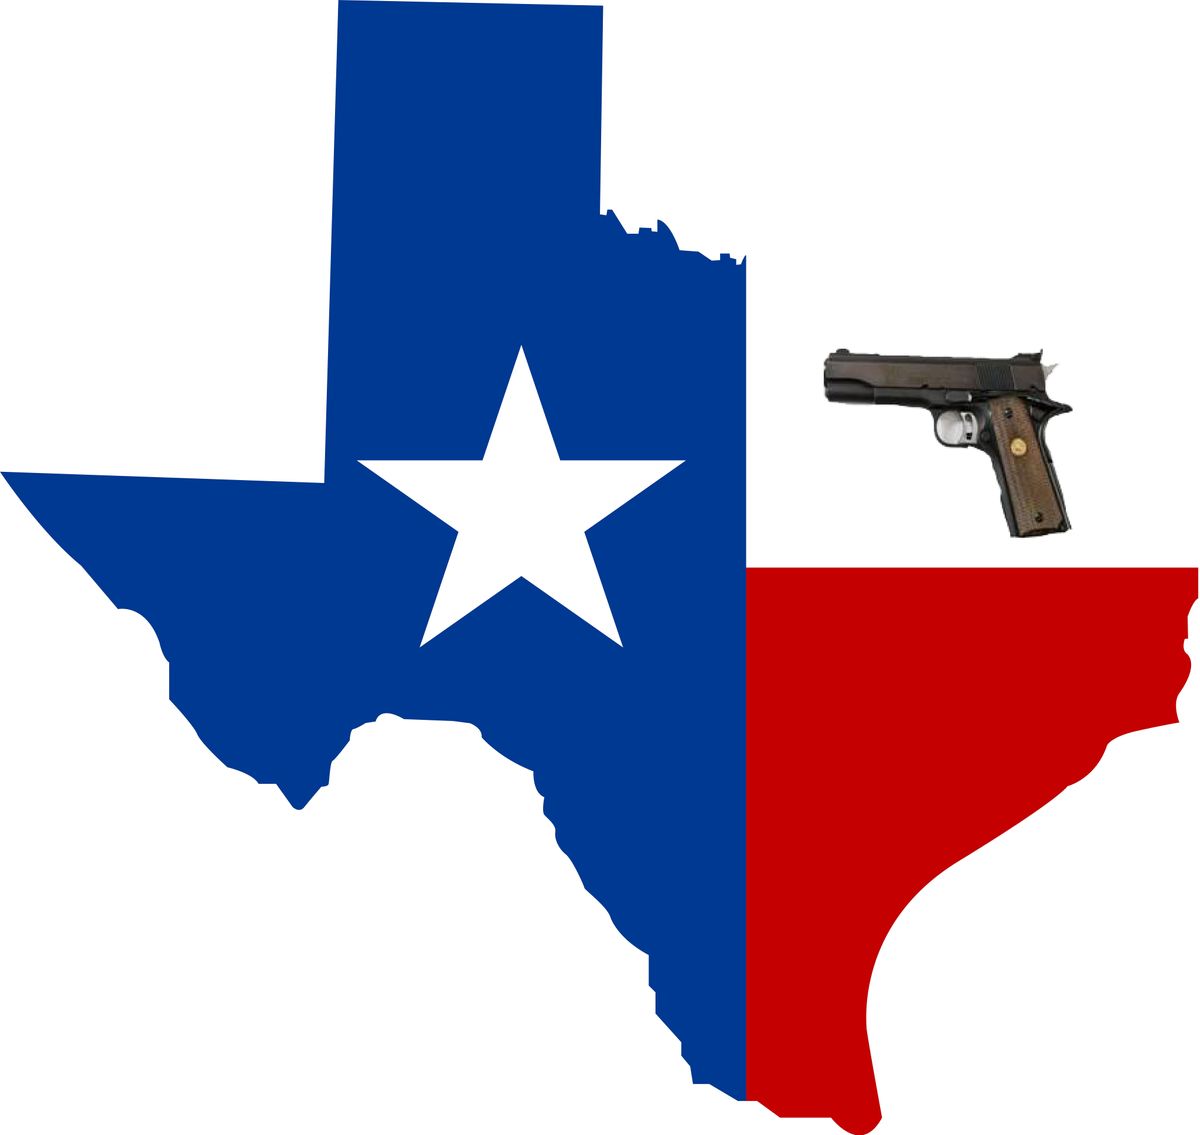 Basic Handgun 101 + Texas LTC Class